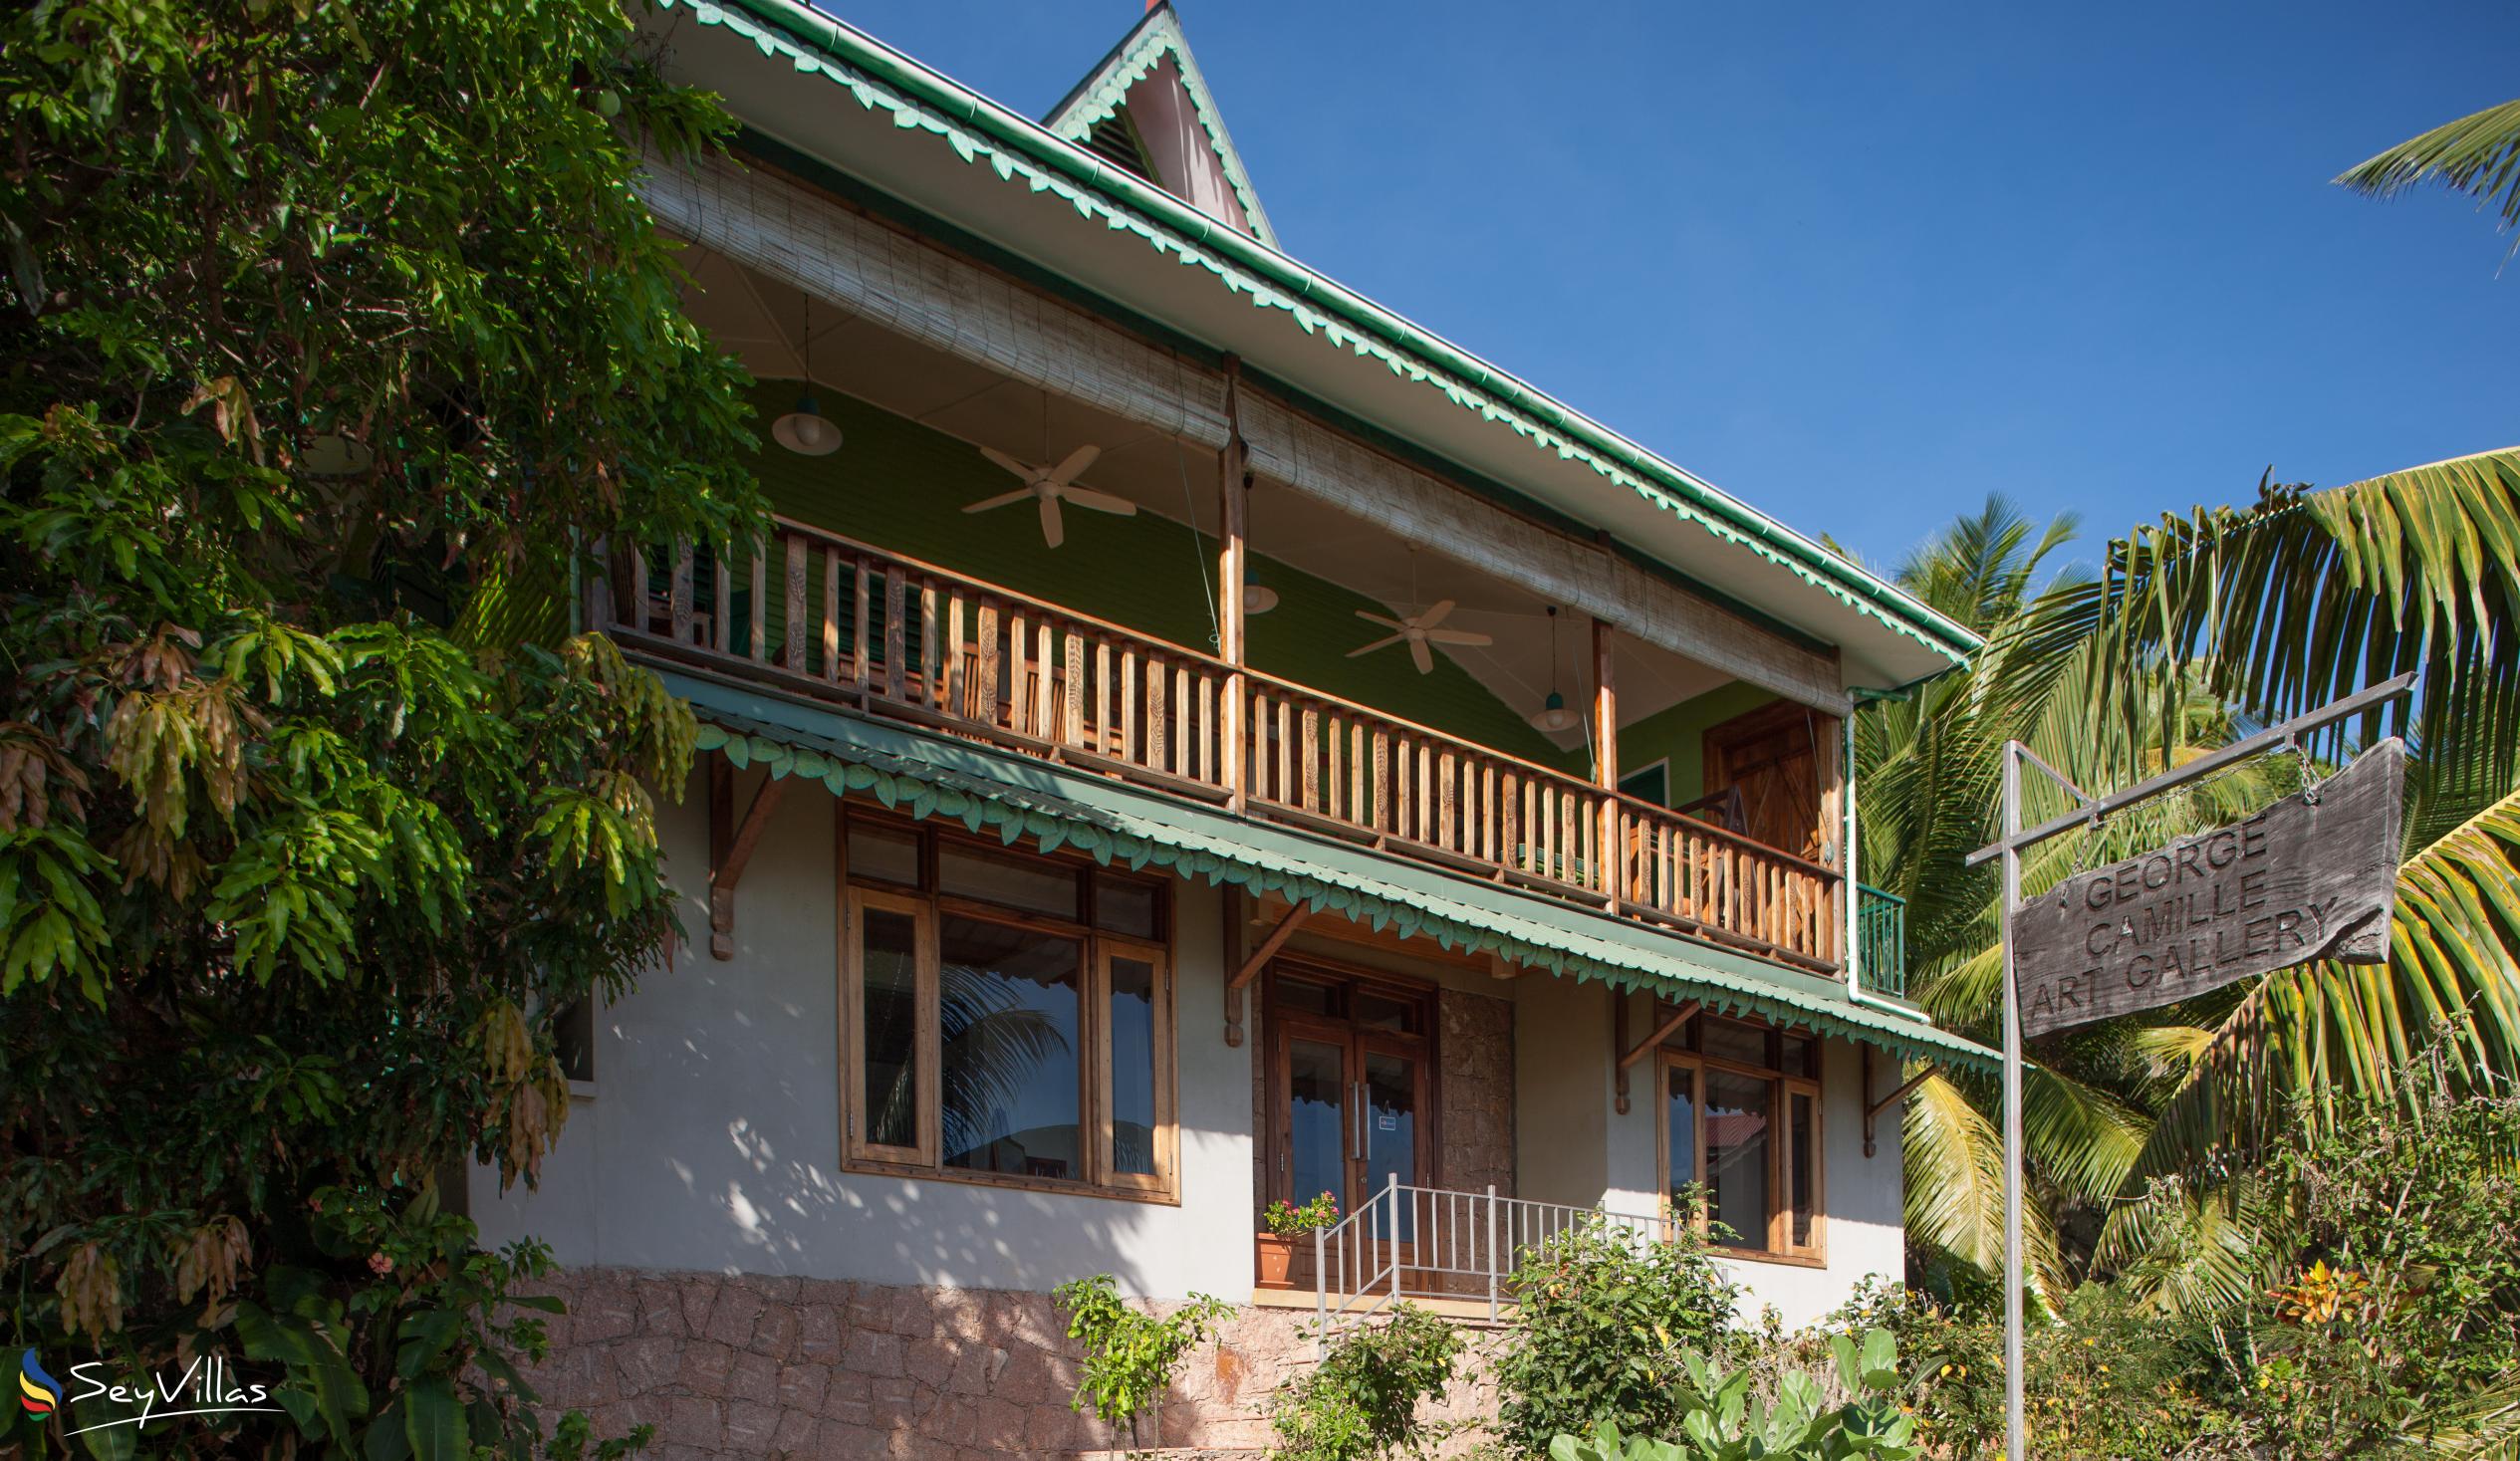 Foto 4: Villa Verte - Aussenbereich - La Digue (Seychellen)